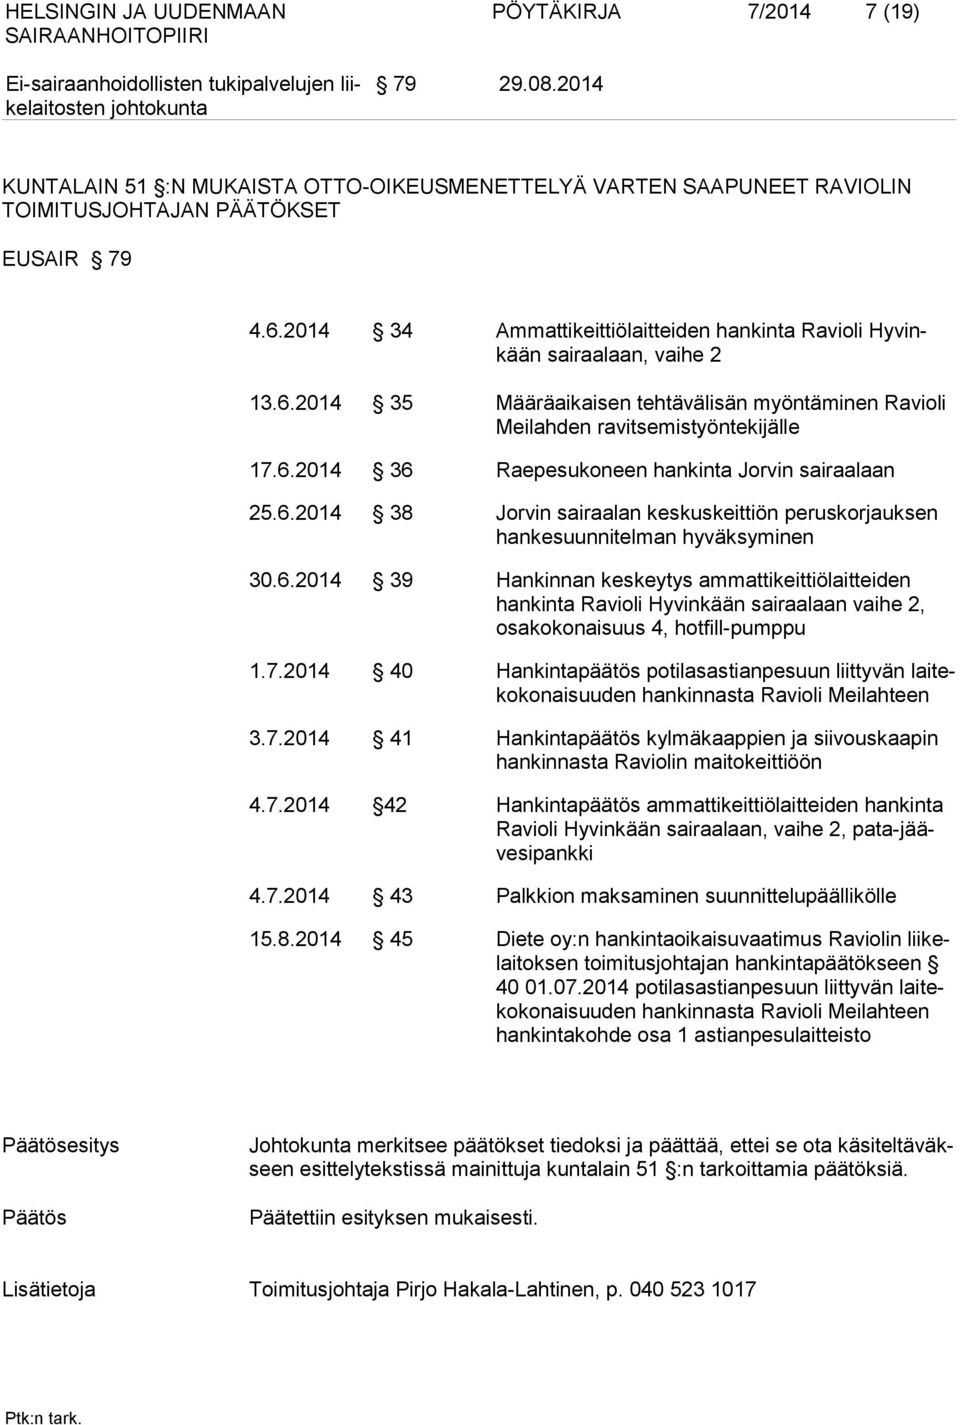 6.2014 38 Jorvin sairaalan keskuskeittiön peruskorjauksen hankesuunnitelman hyväksyminen 30.6.2014 39 Hankinnan keskeytys ammattikeittiölaitteiden hankinta Ravioli Hyvinkään sairaalaan vaihe 2, osakokonaisuus 4, hotfill-pumppu 1.